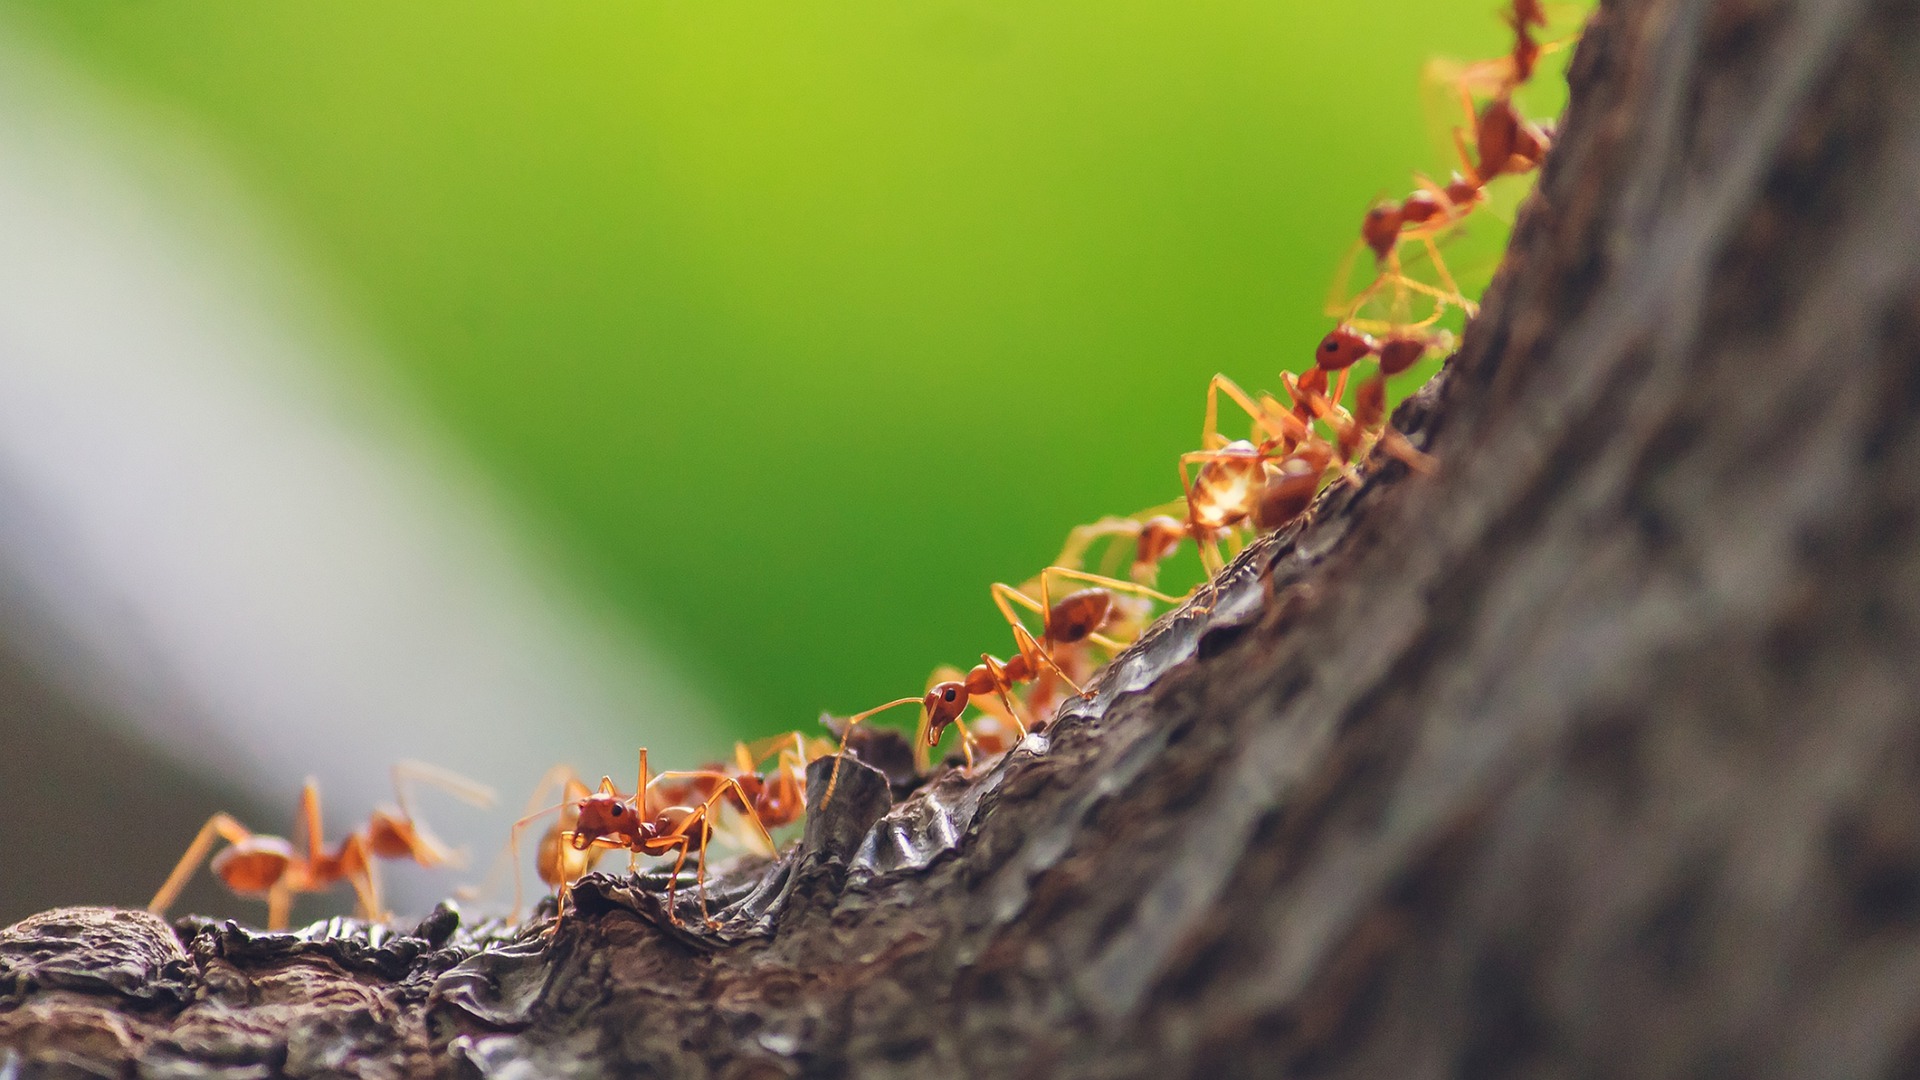 النمل كيف يمكن اكتشافه والتخلص منه